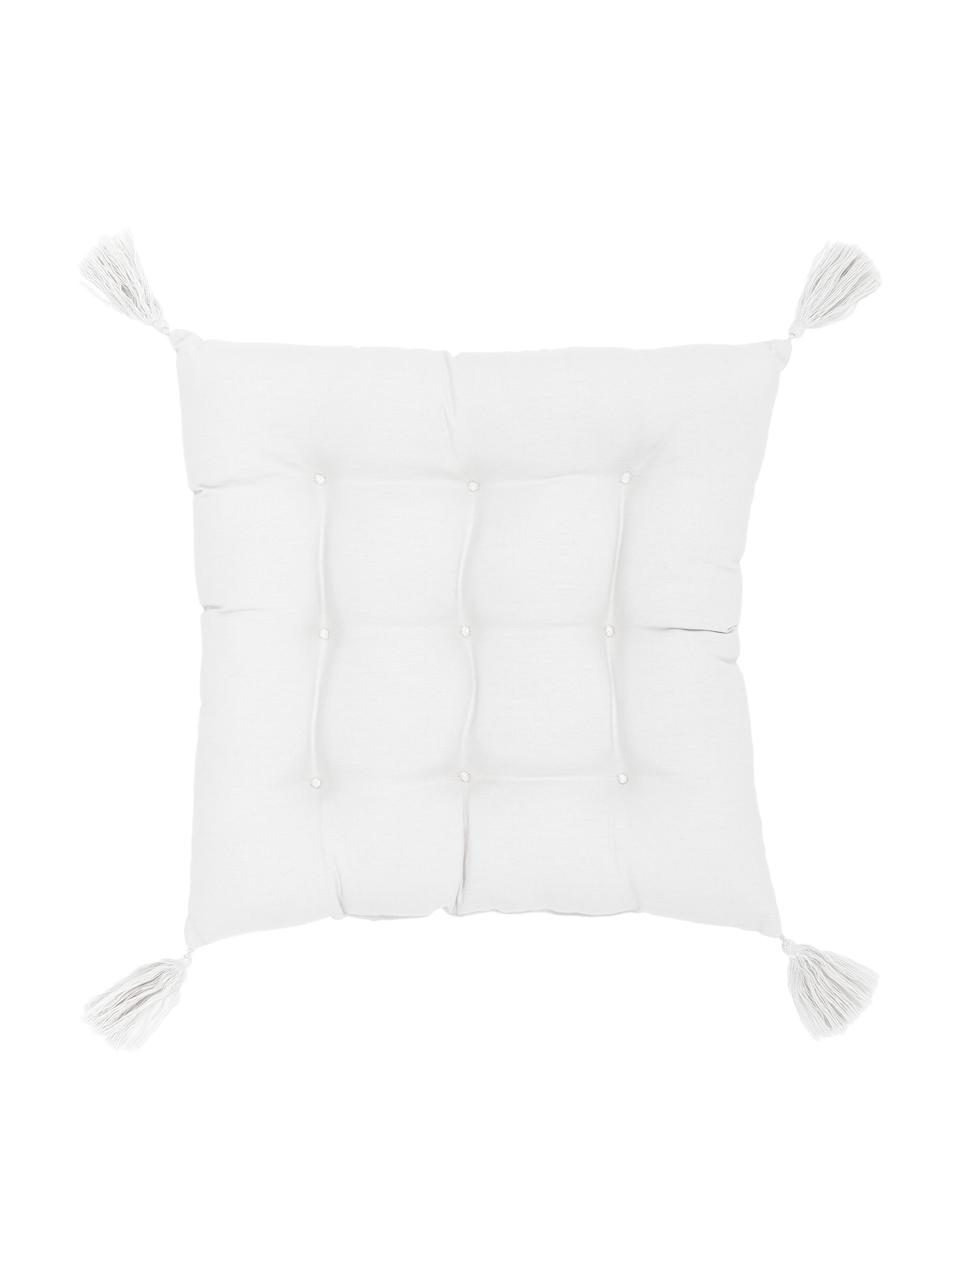 Baumwoll-Sitzkissen Ava in Weiss mit Quasten, Bezug: 100% Baumwolle, Weiss, B 40 x L 40 cm